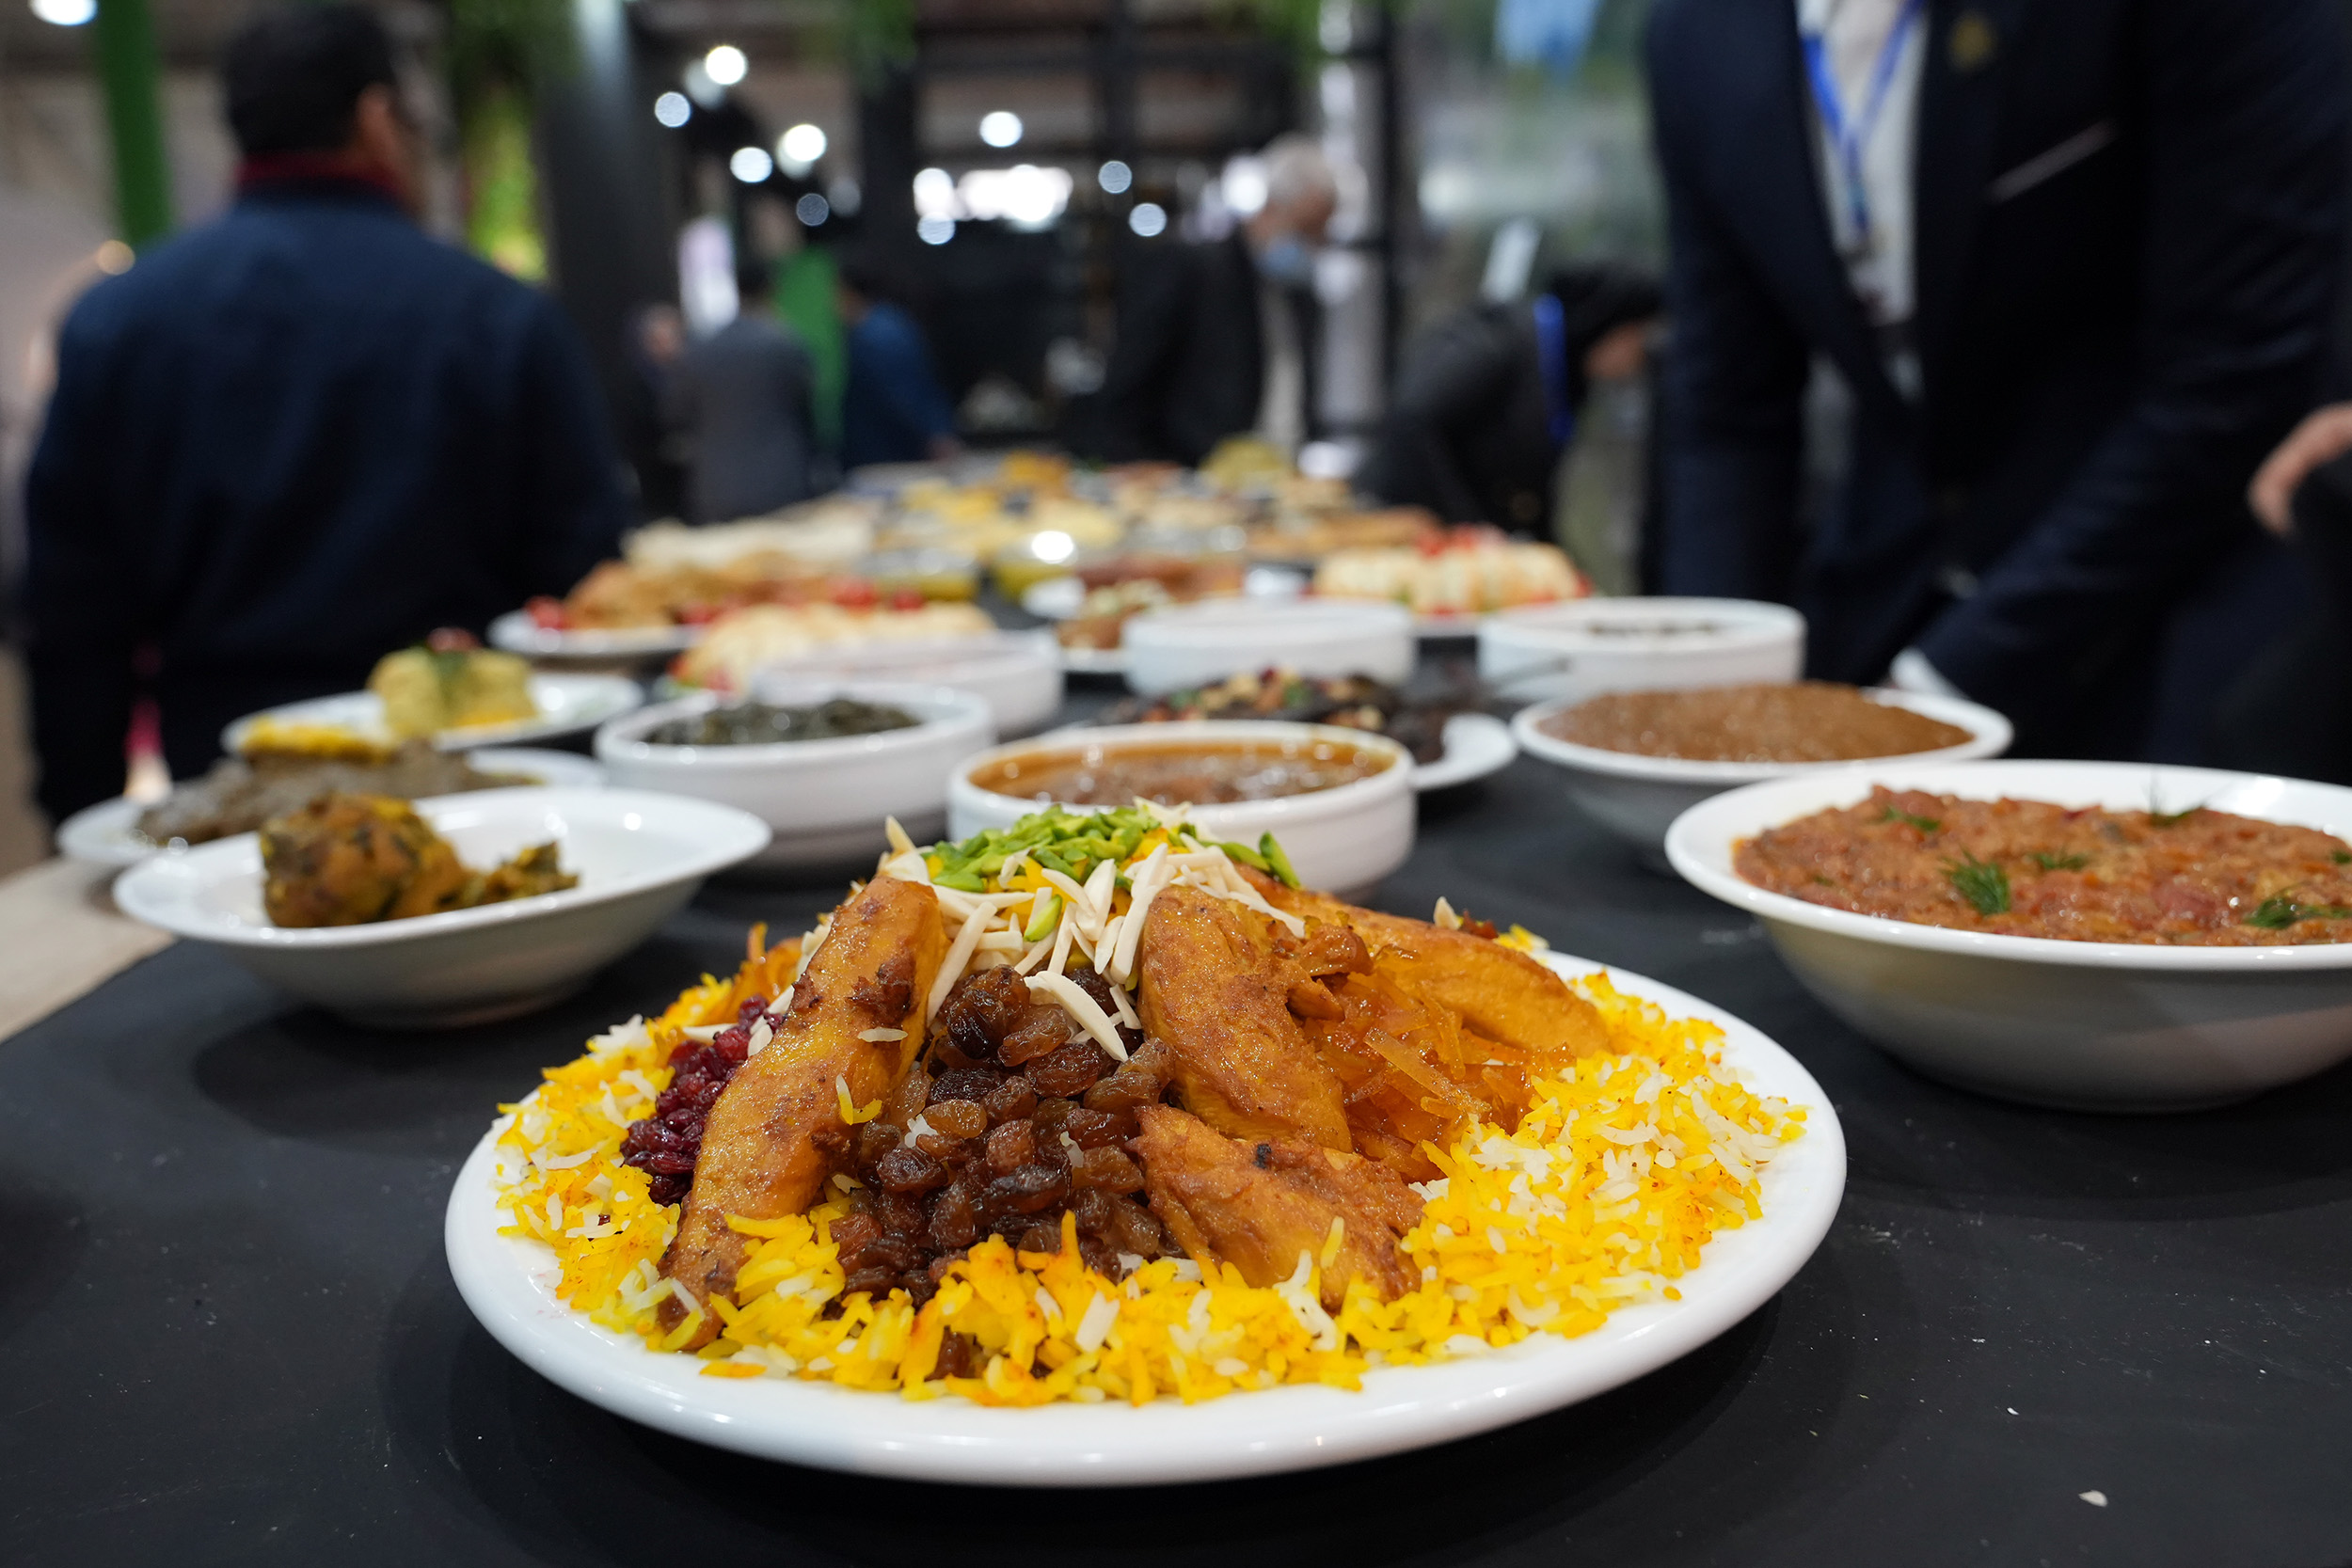 استقبال مردمی ساعت کار نمایشگاه را تمدید کرد/ حضور غرفه استان گیلان با معرفی 80 غذای محلی